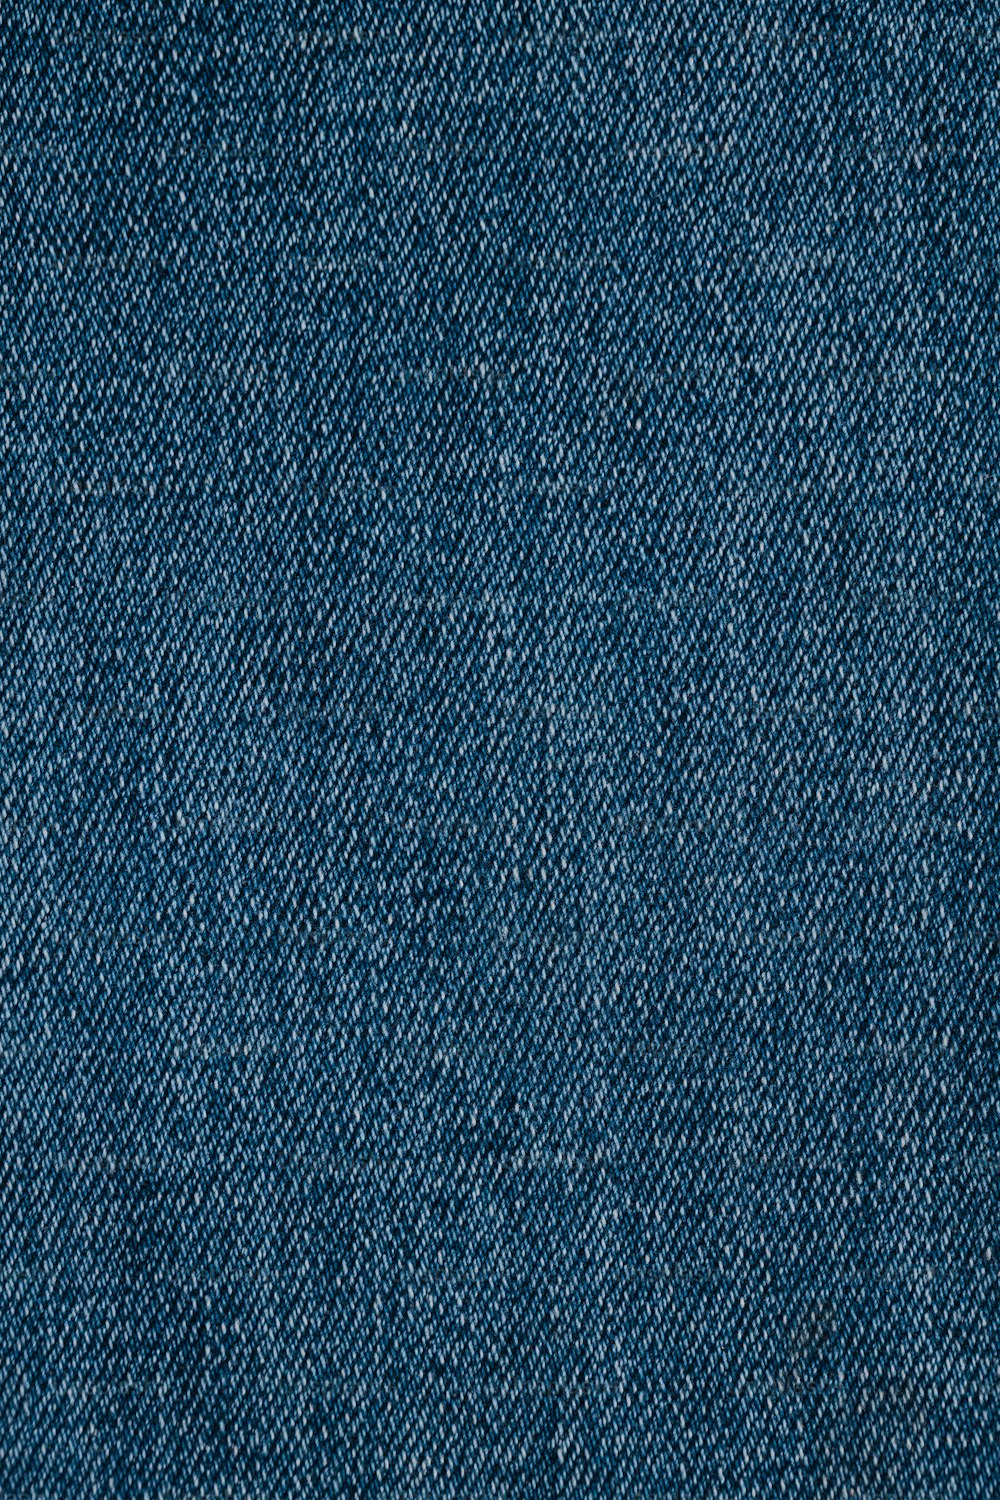 um close up de uma textura de tecido jeans azul